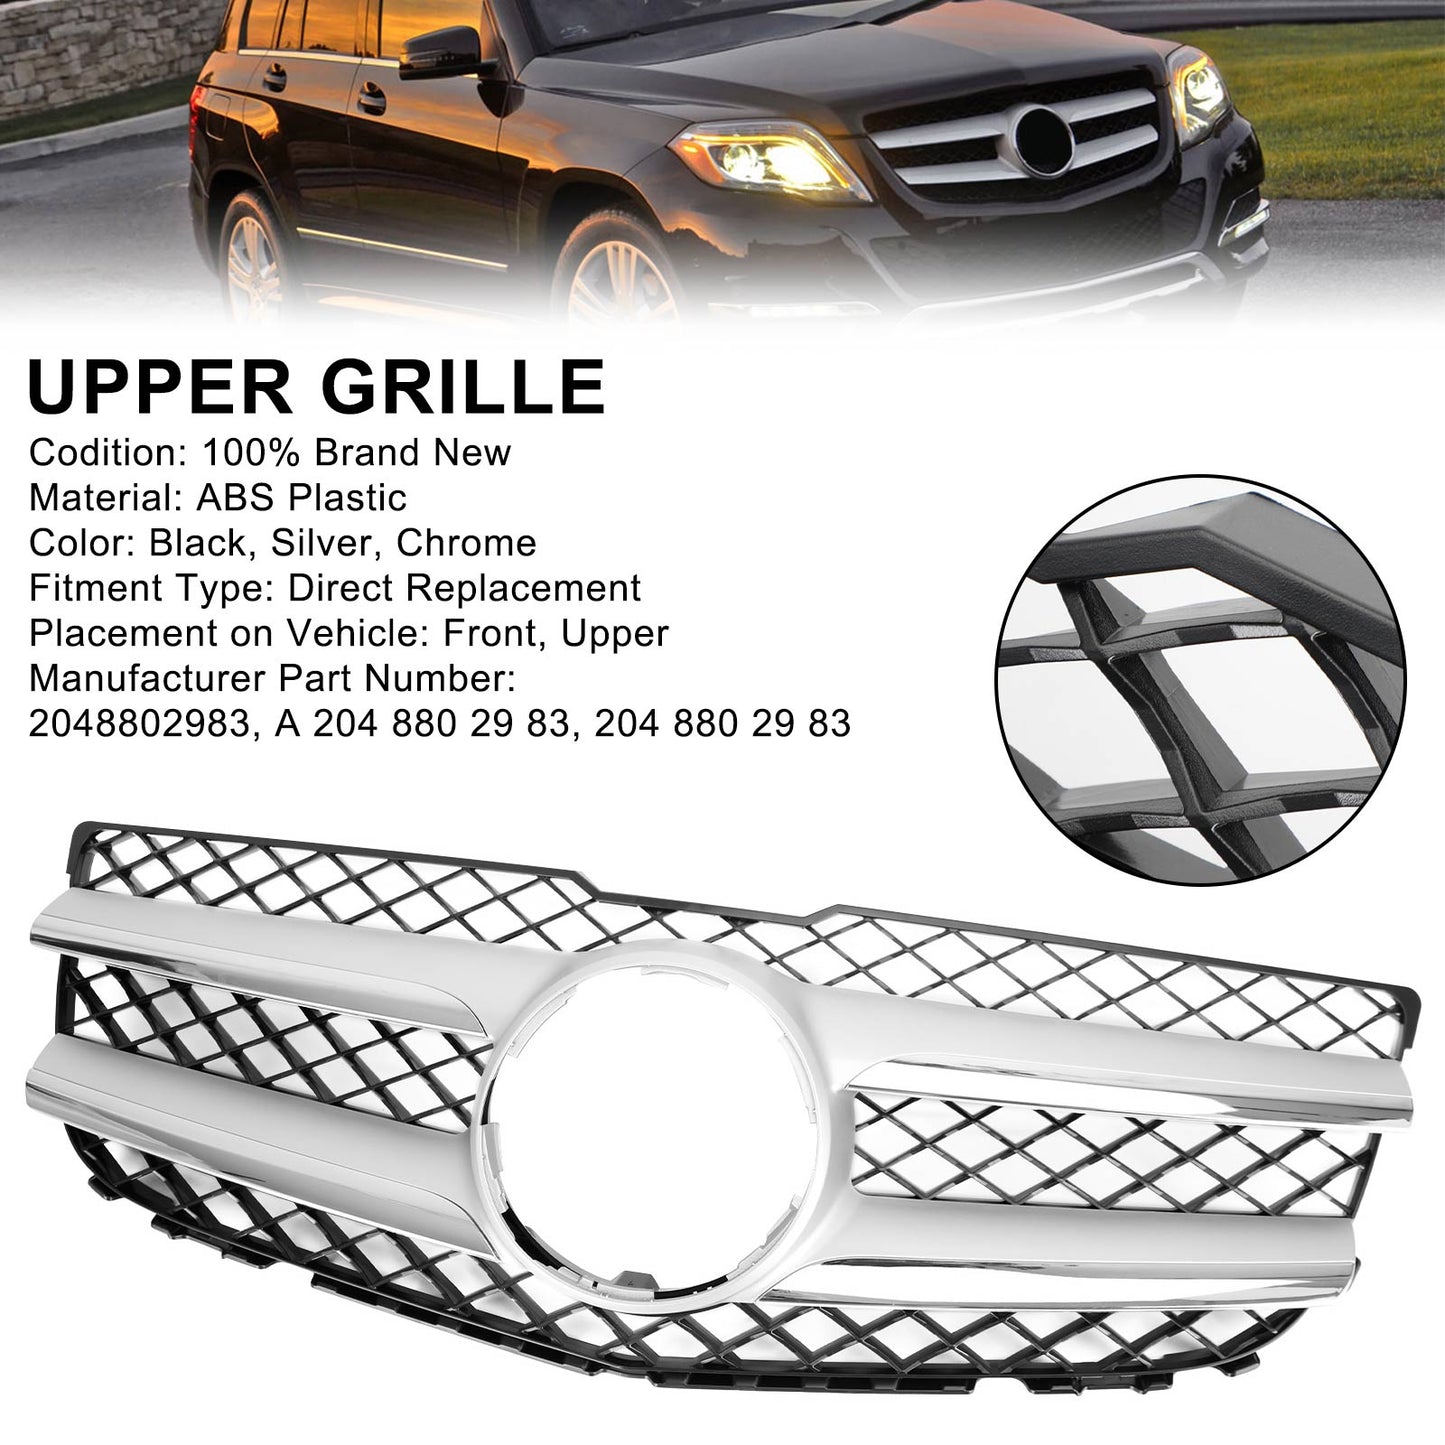 2013-2015 Mercedes-Benz GLK250 BLUETEC 4MATIC Sport Utility 4 portes Capot avant Grille de pare-chocs Grille 2048802983